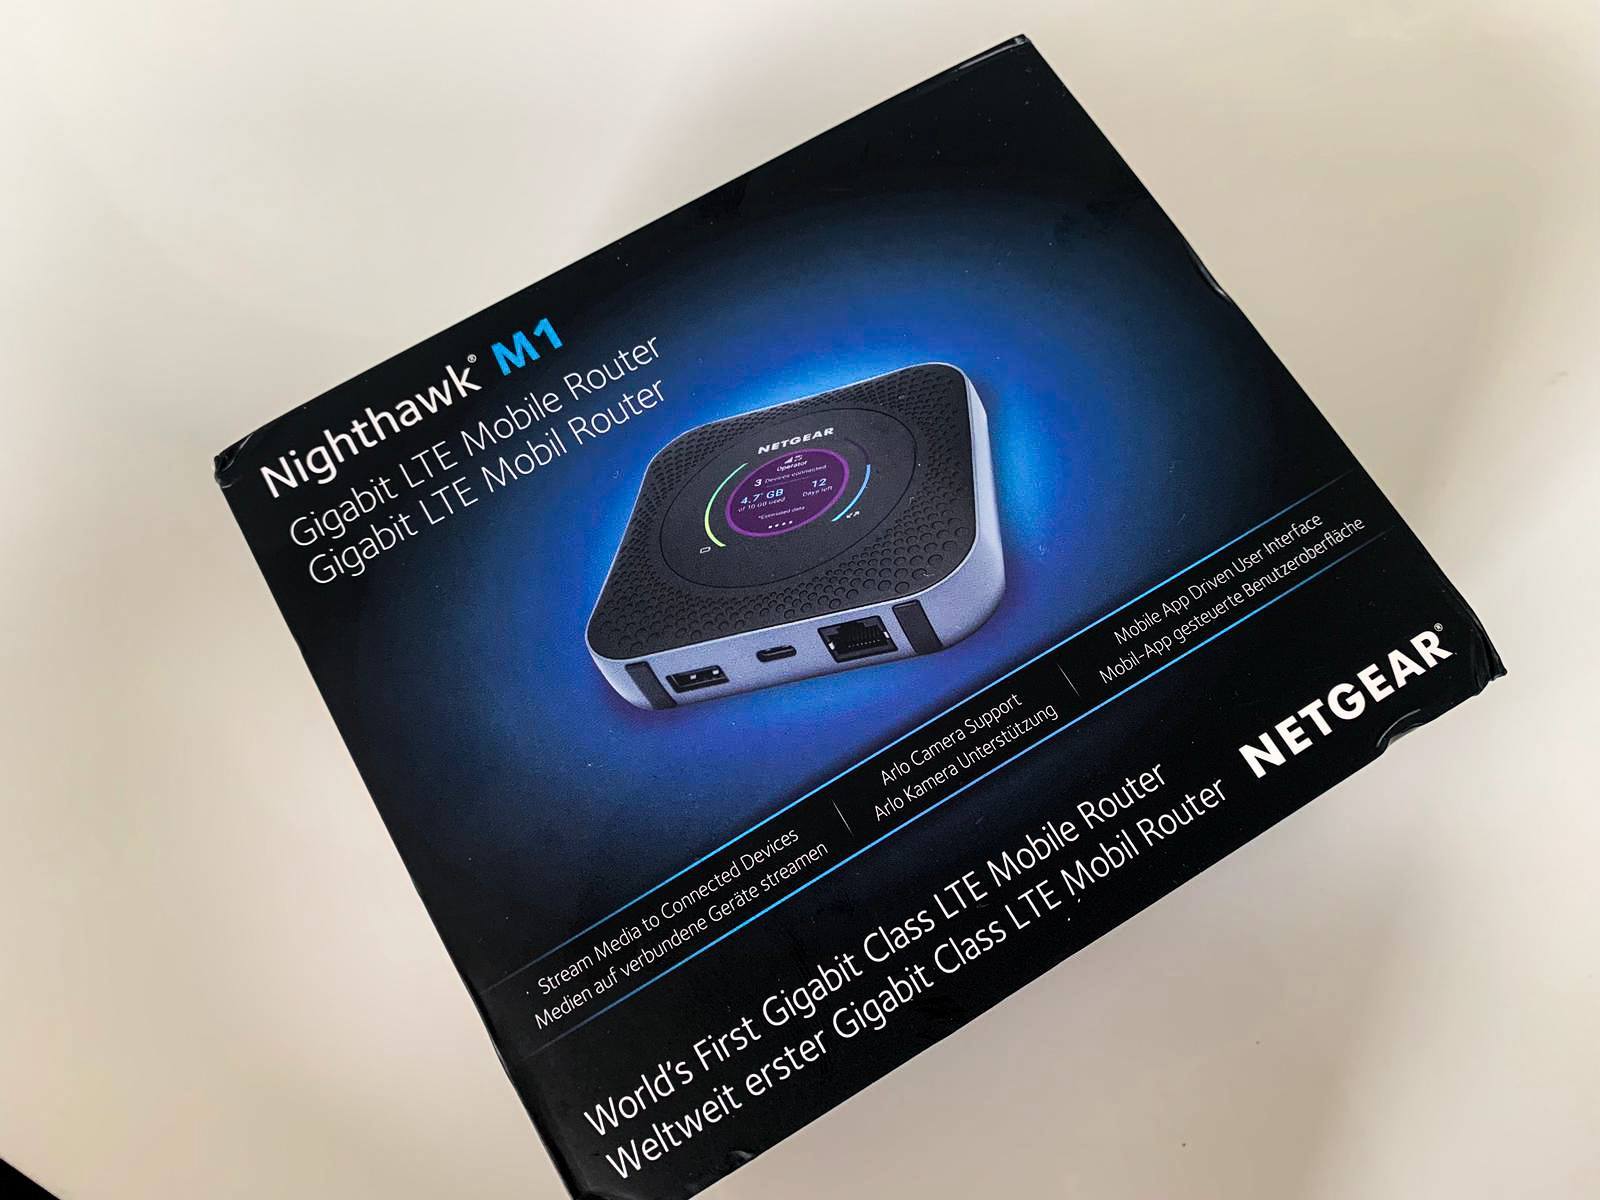 Netgear Mobile Router